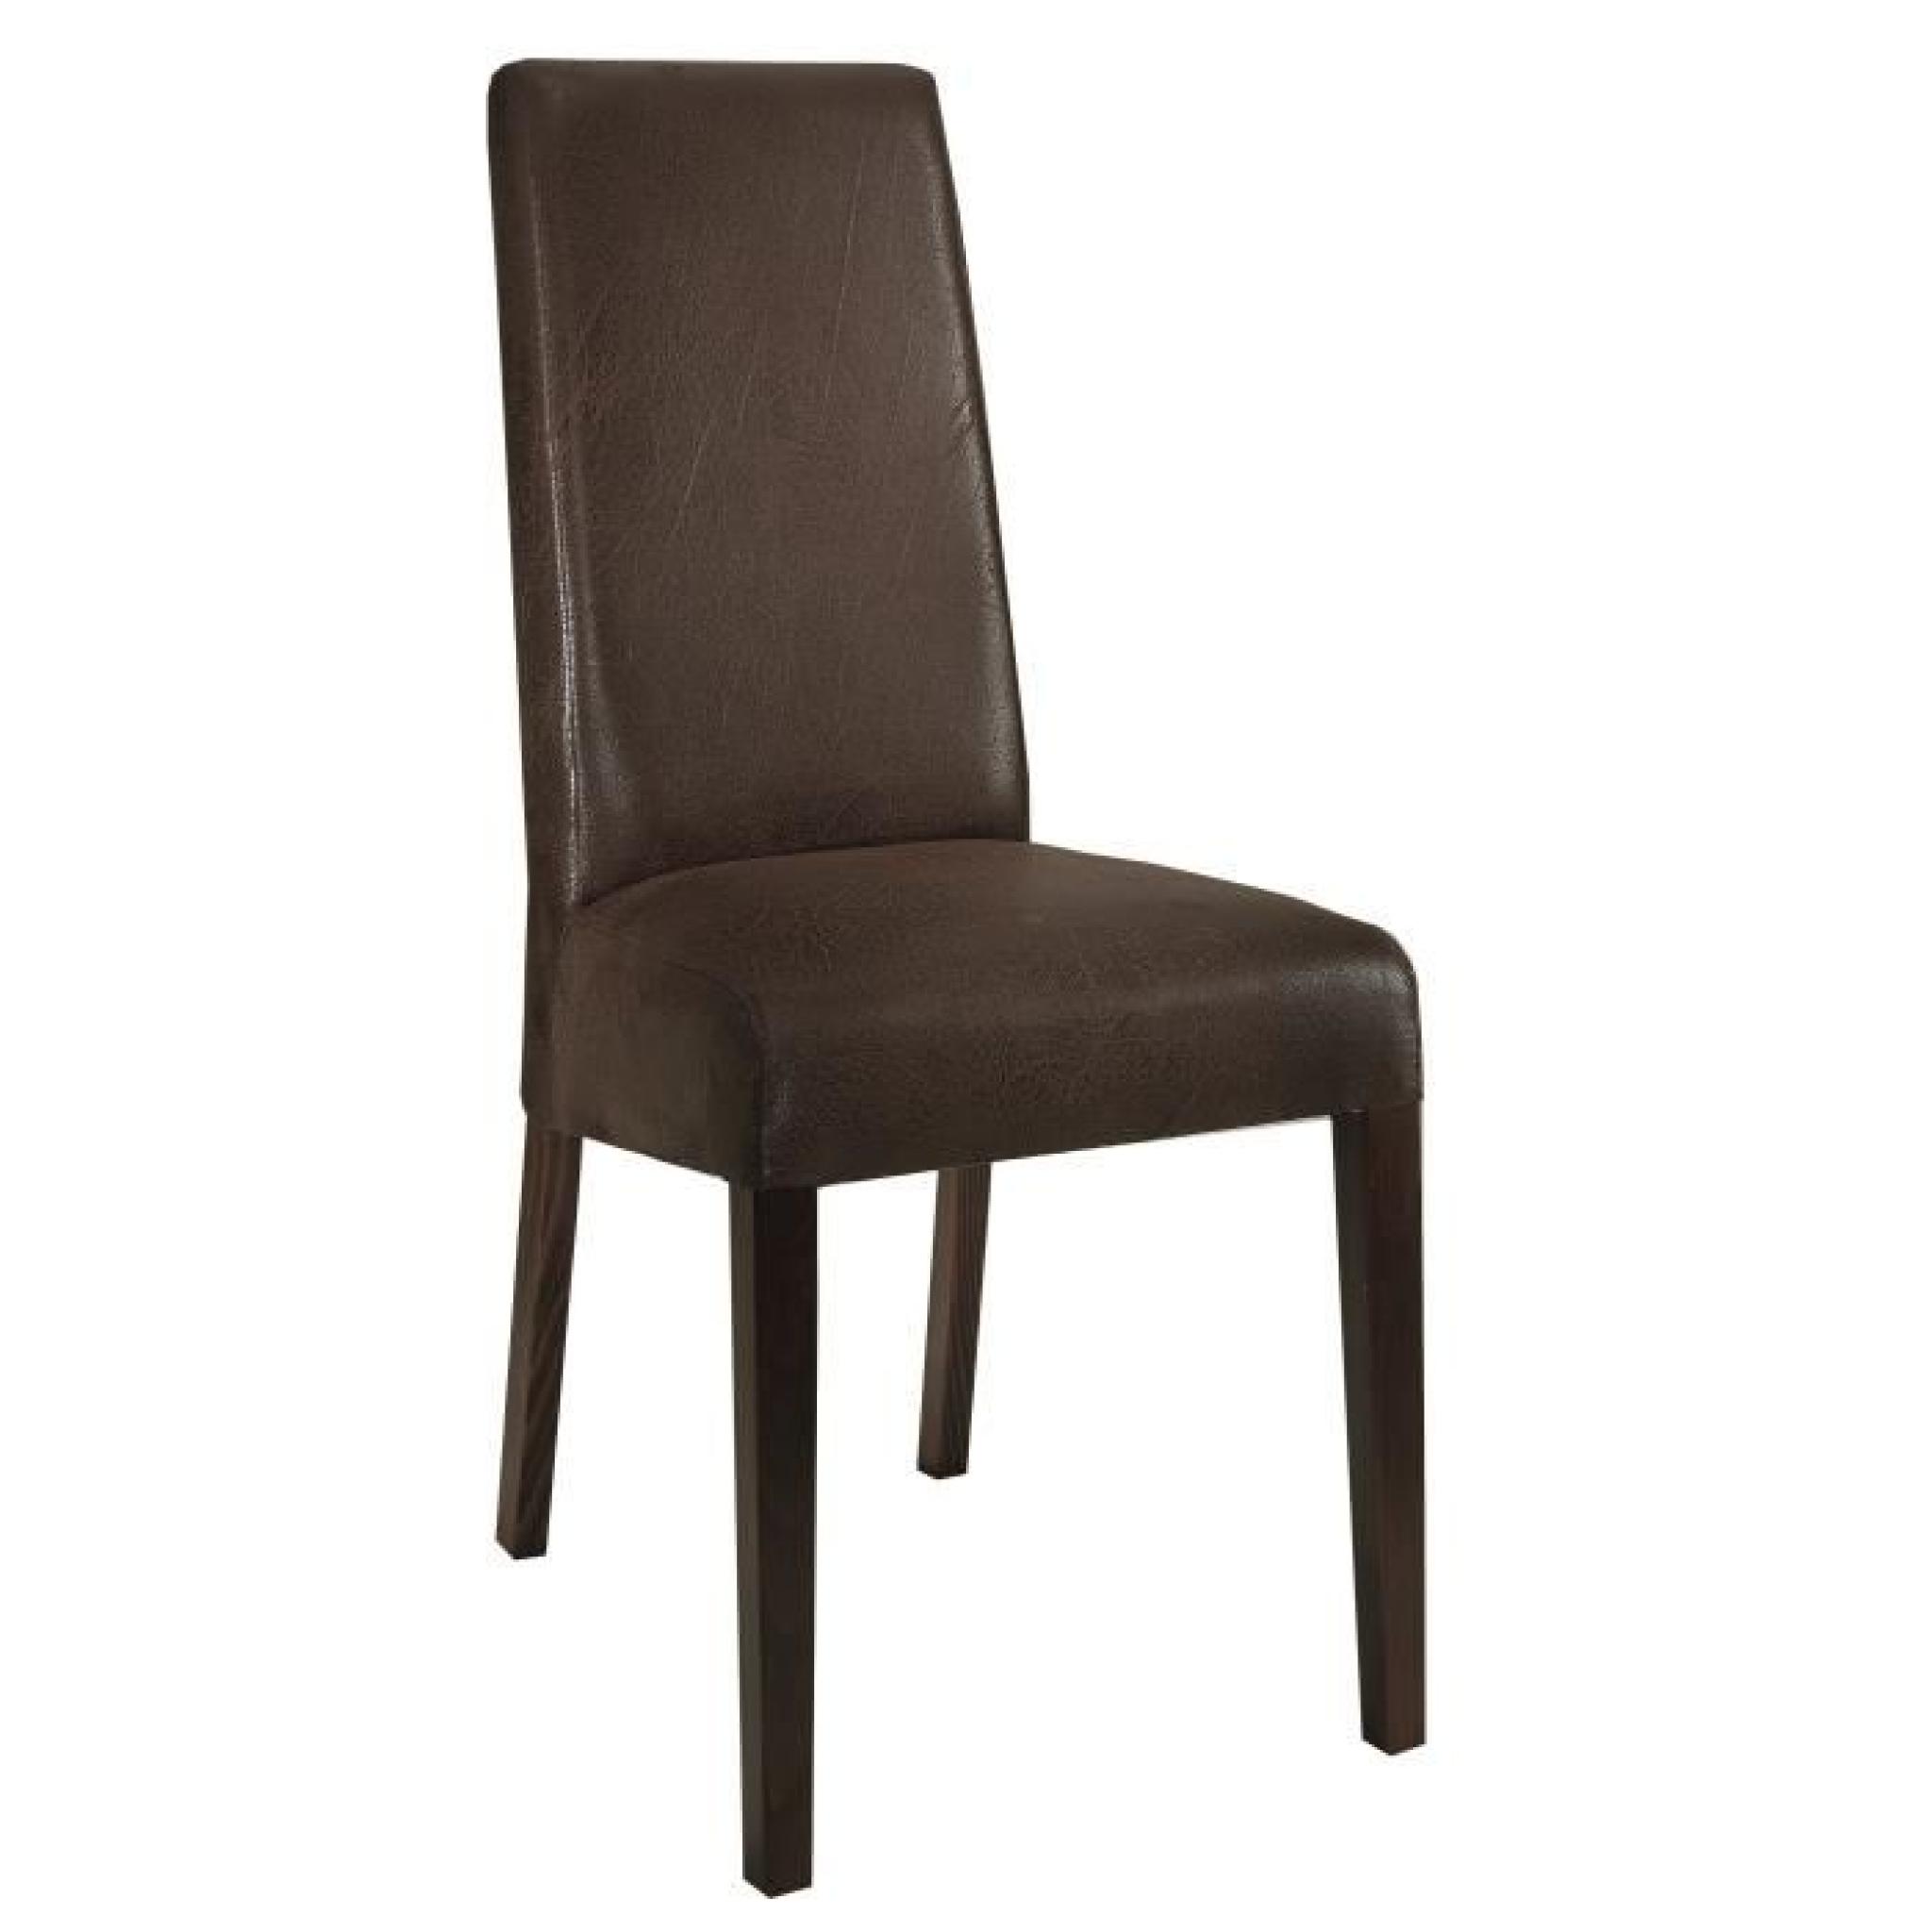 Table 190 cm en bois clair + 4 chaises en tissu brun foncé pas cher